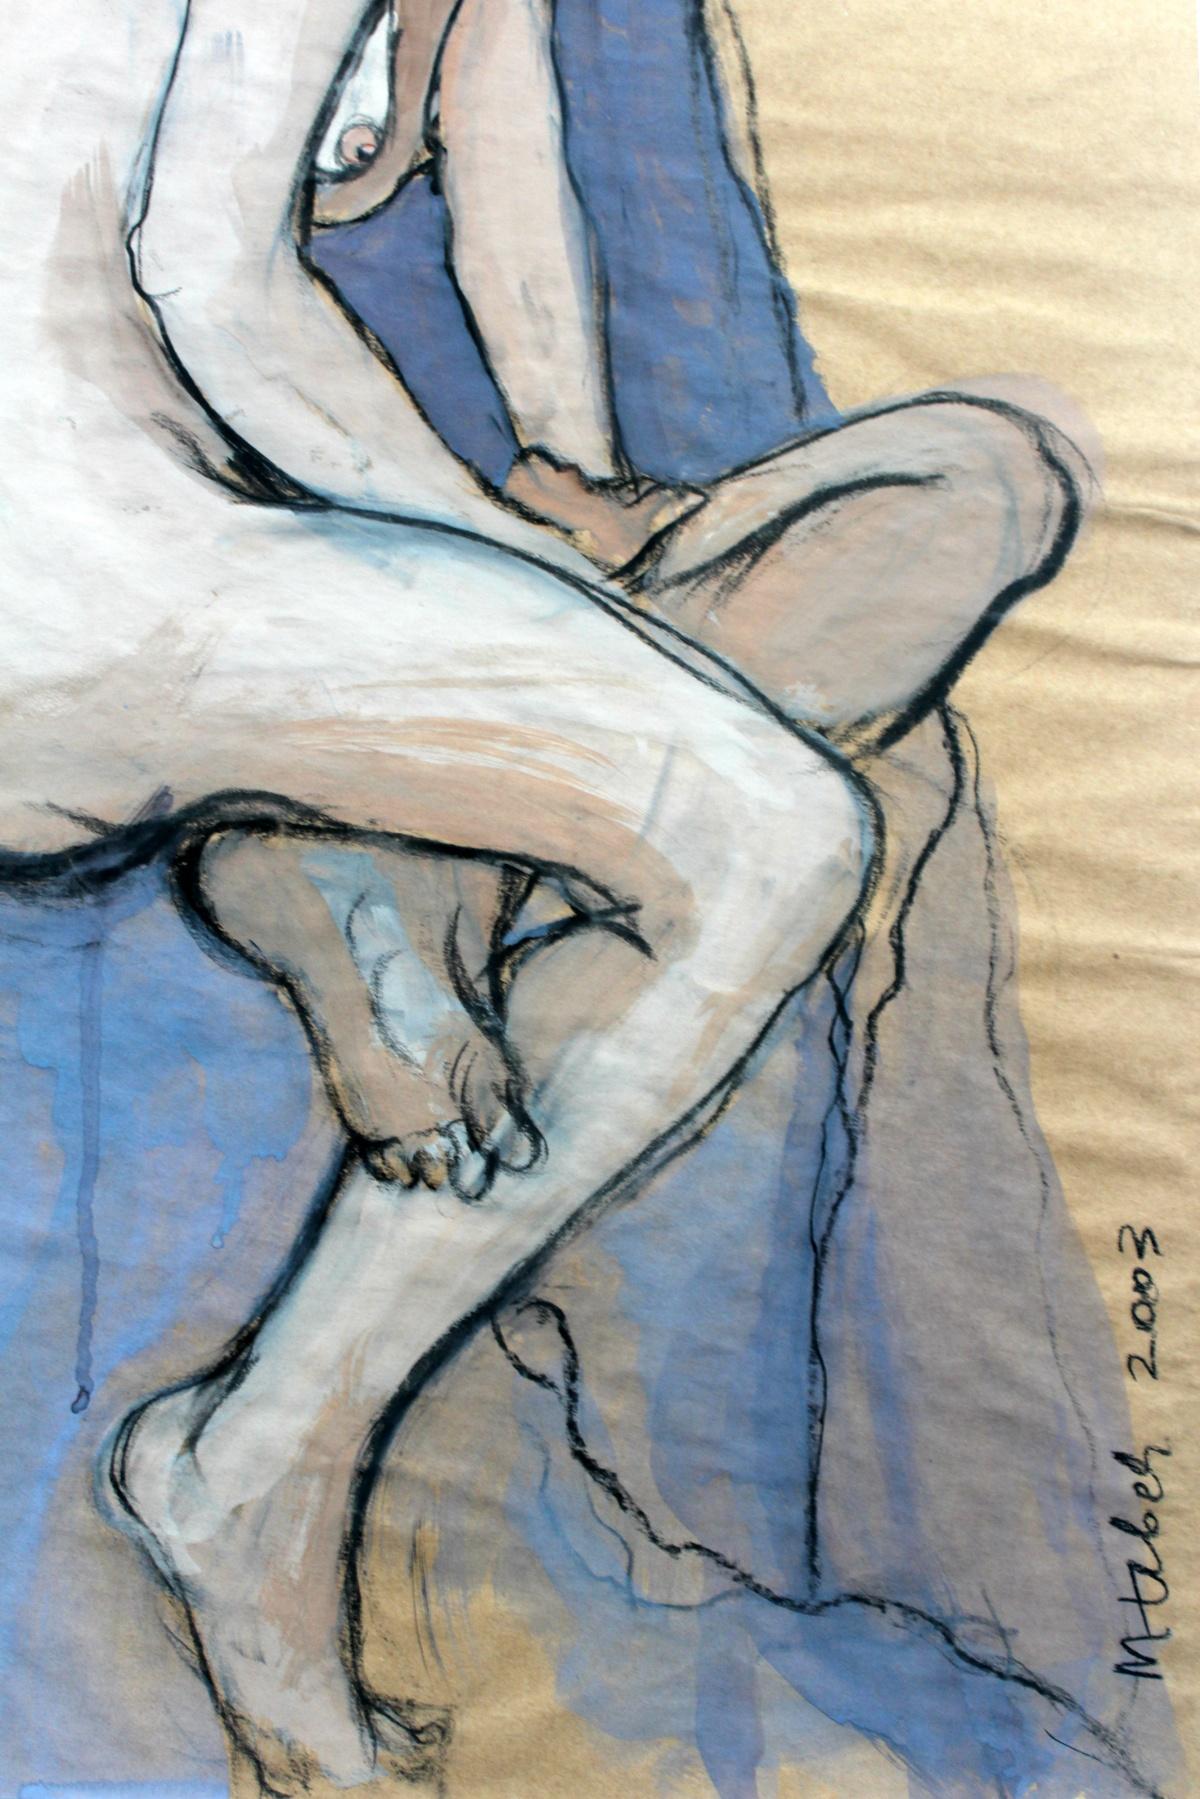 Akt - XXI Jahrhundert, Zeitgenössische Gouache und Kohle Figurative Zeichnung, Weiblich (Expressionismus), Art, von Marta Łebek